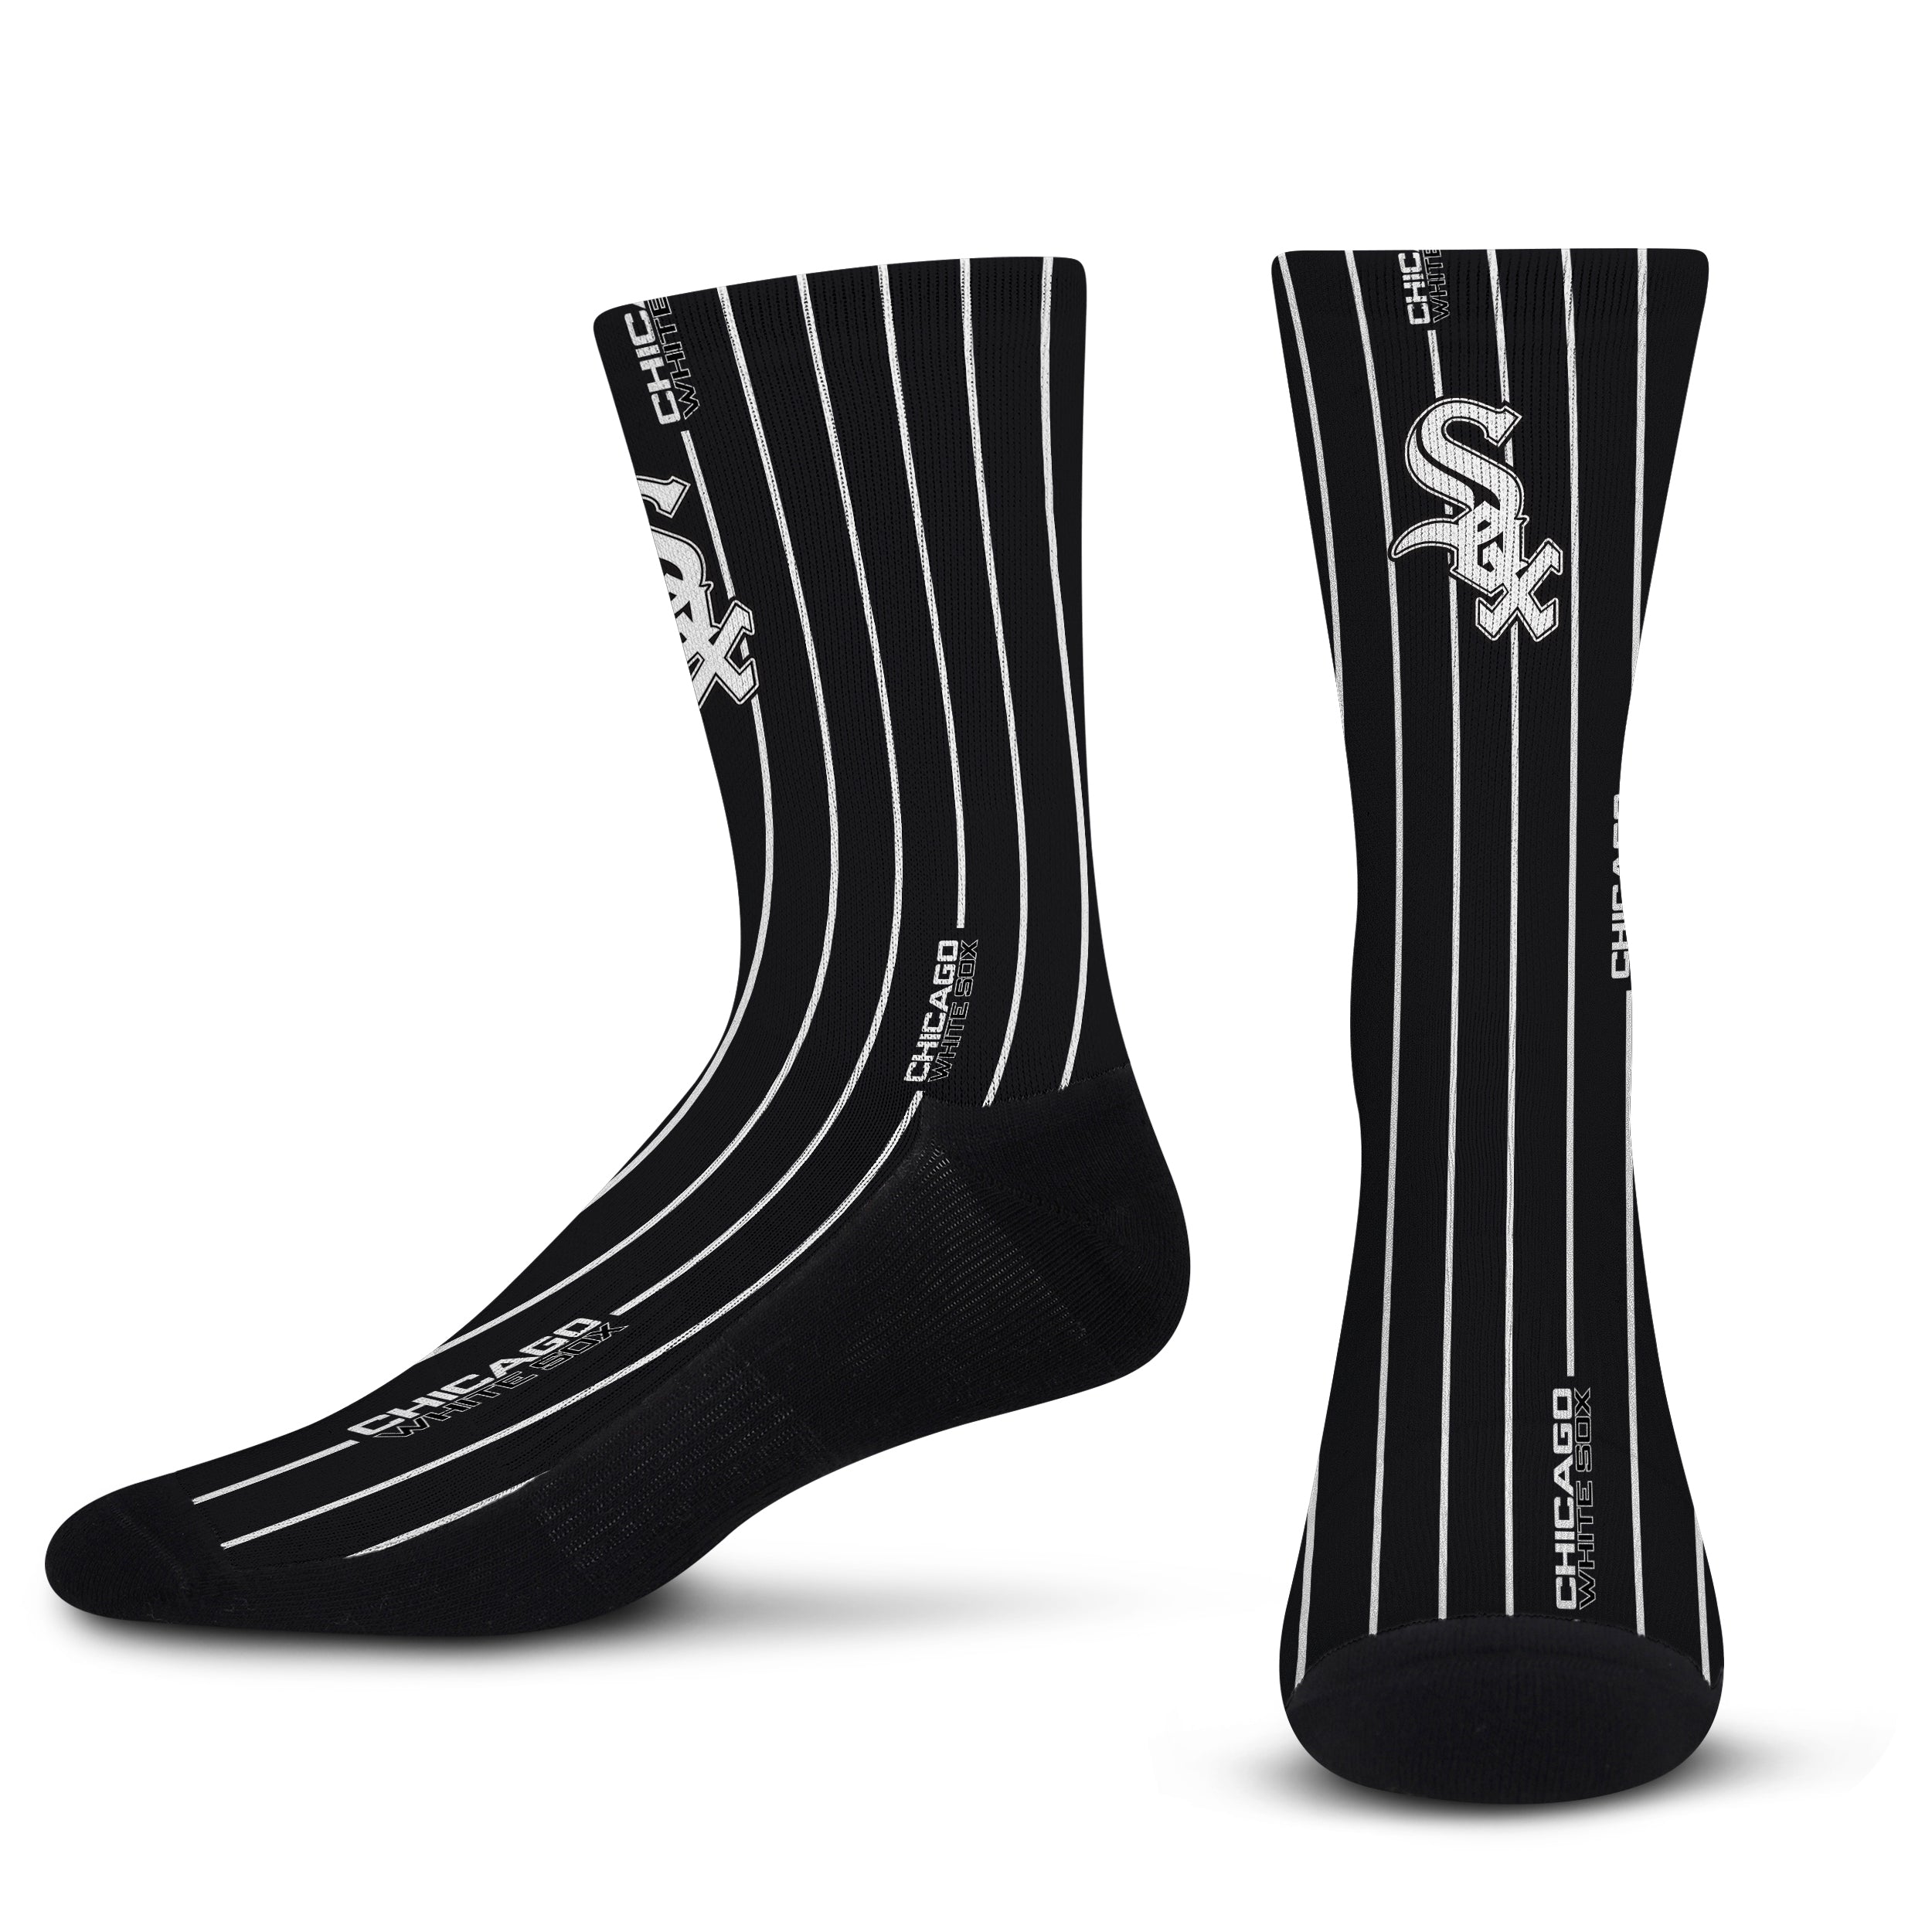 Chicago White Sox – For Bare Feet